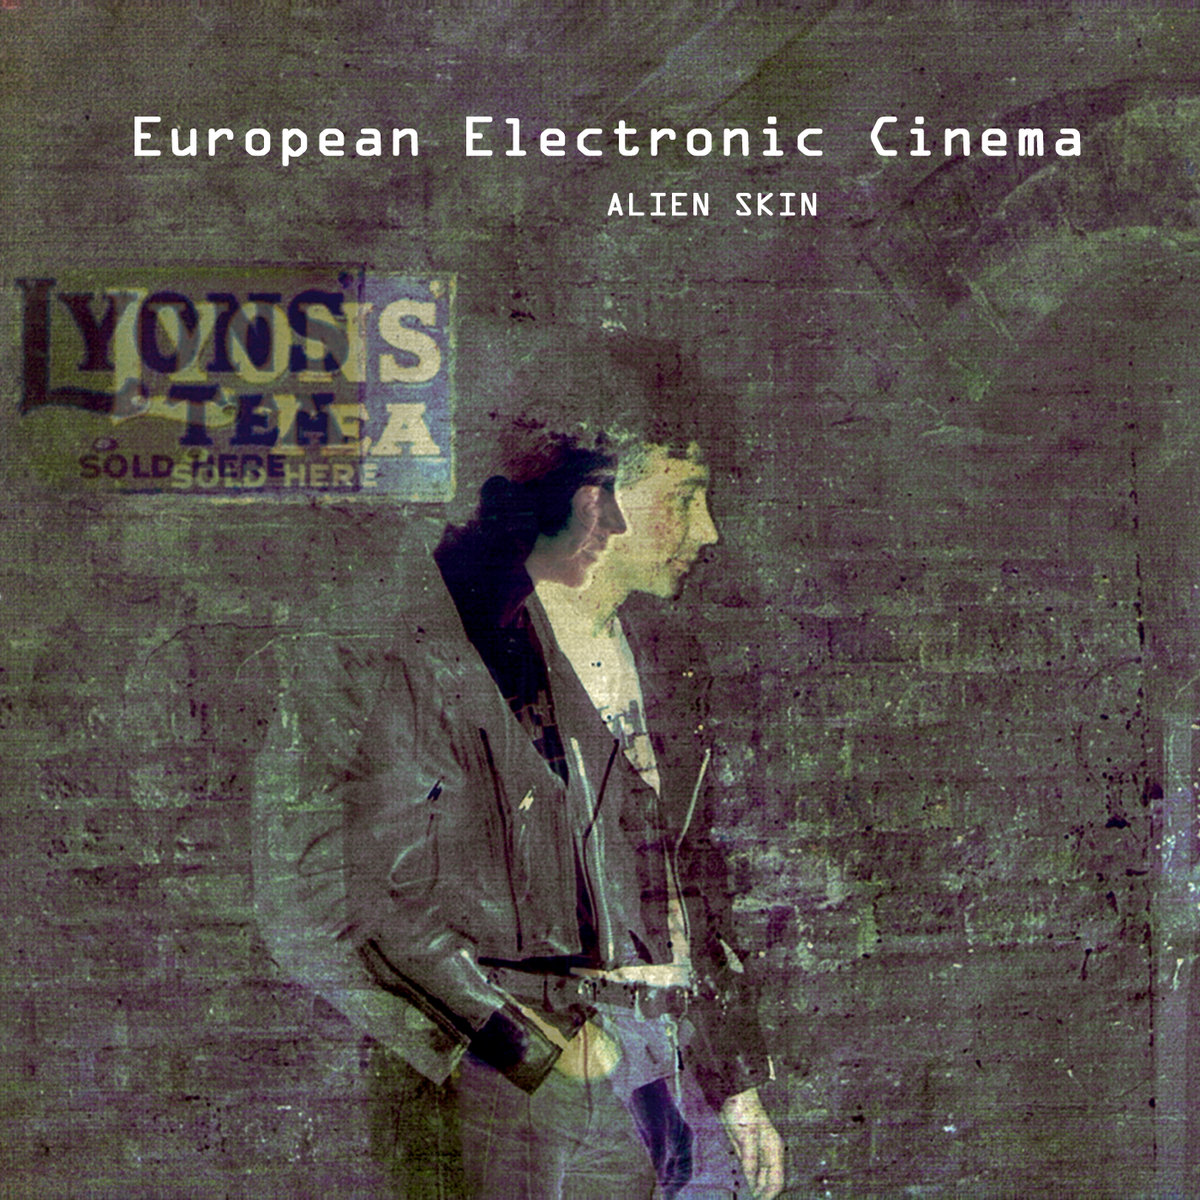 European Electronic Cinema by Alien Skin